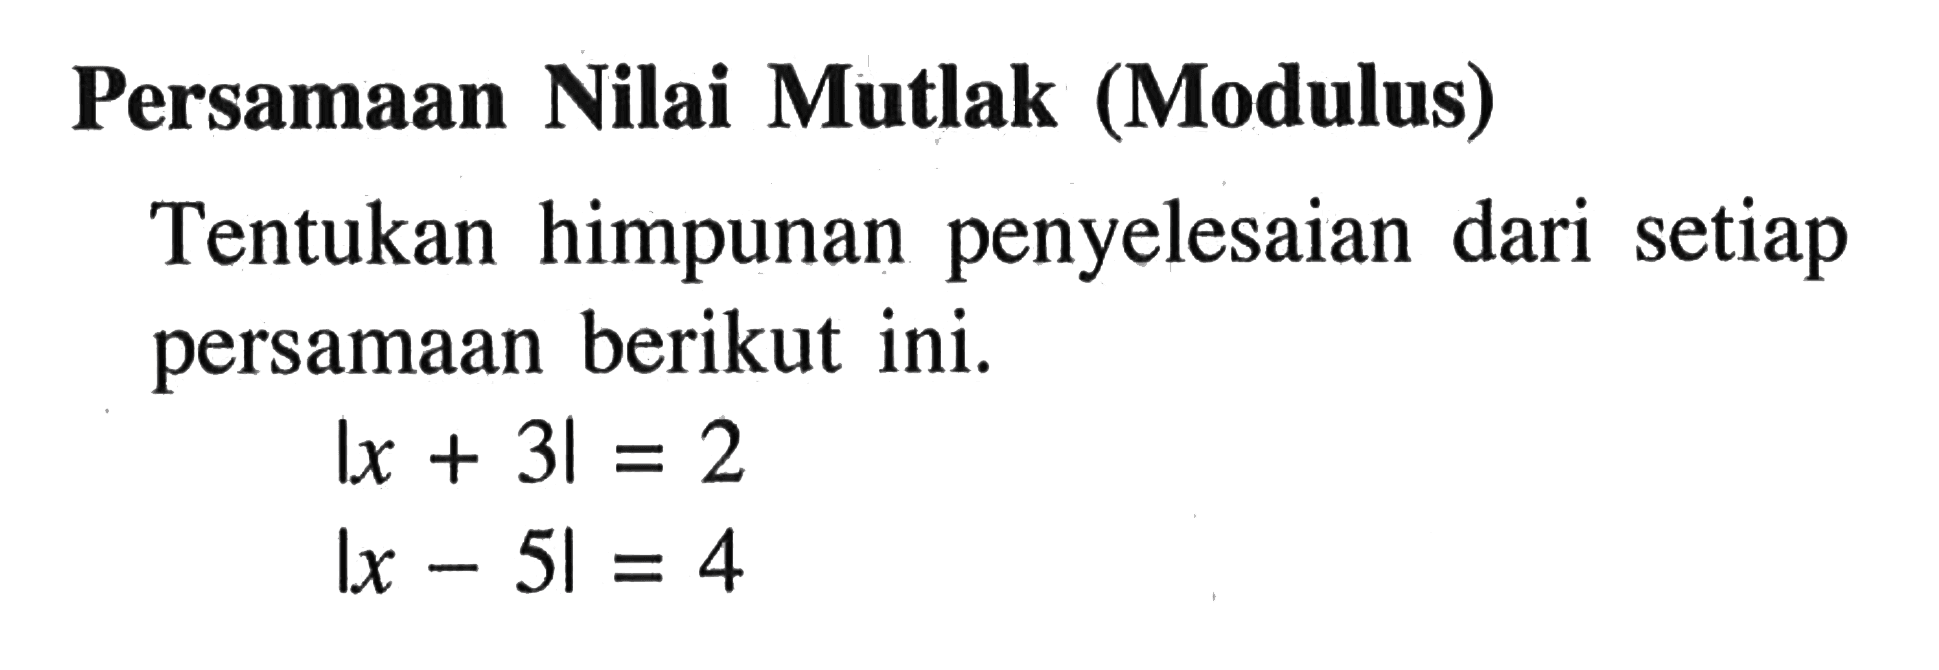 Persamaan Nilai Mutlak (Modulus) Tentukan himpunan penyelesaian dari setiap persamaan berikut ini. I x + 3 | = 2 I x - 5 | = 4